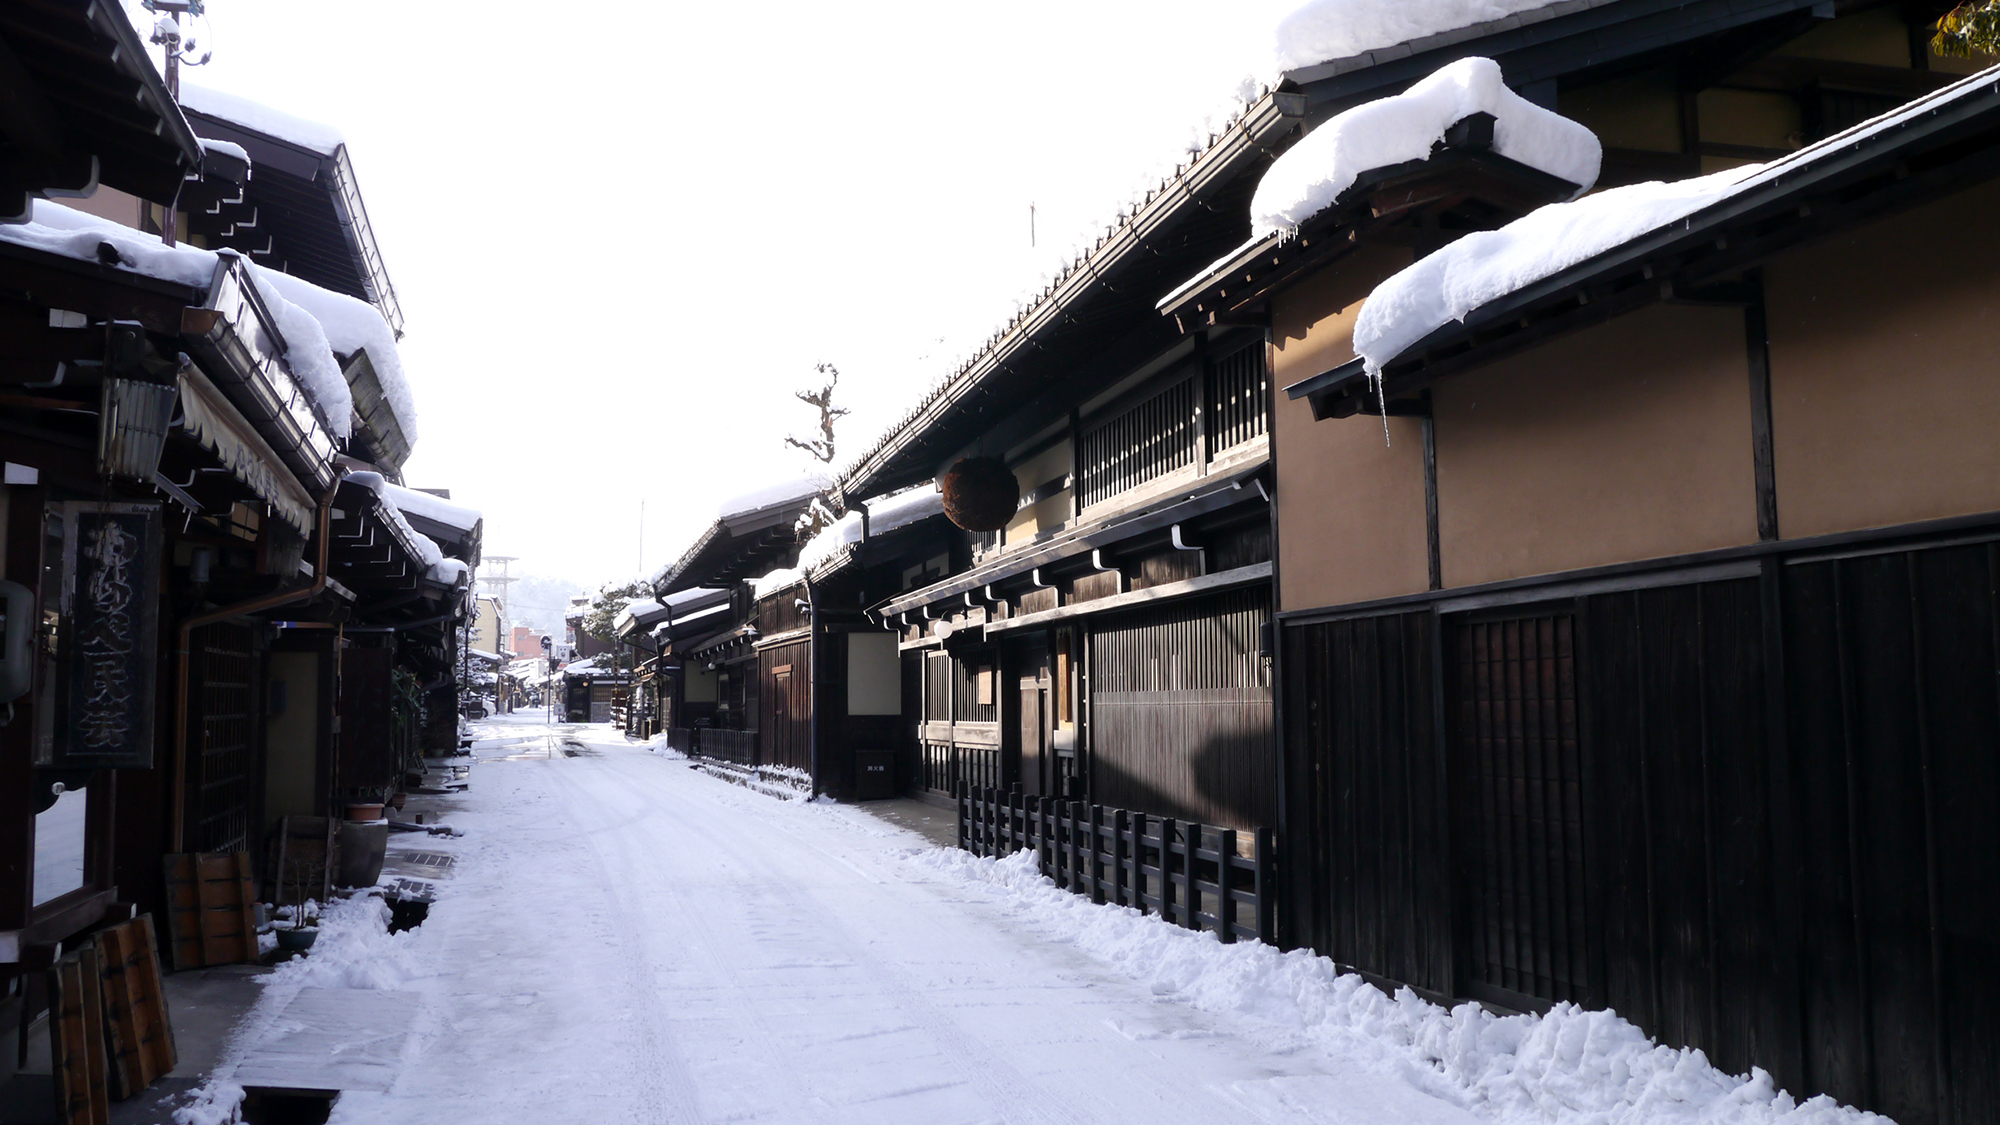 【周辺】雪の古い町並み〜寒いけど情緒があります。散策してみて〜